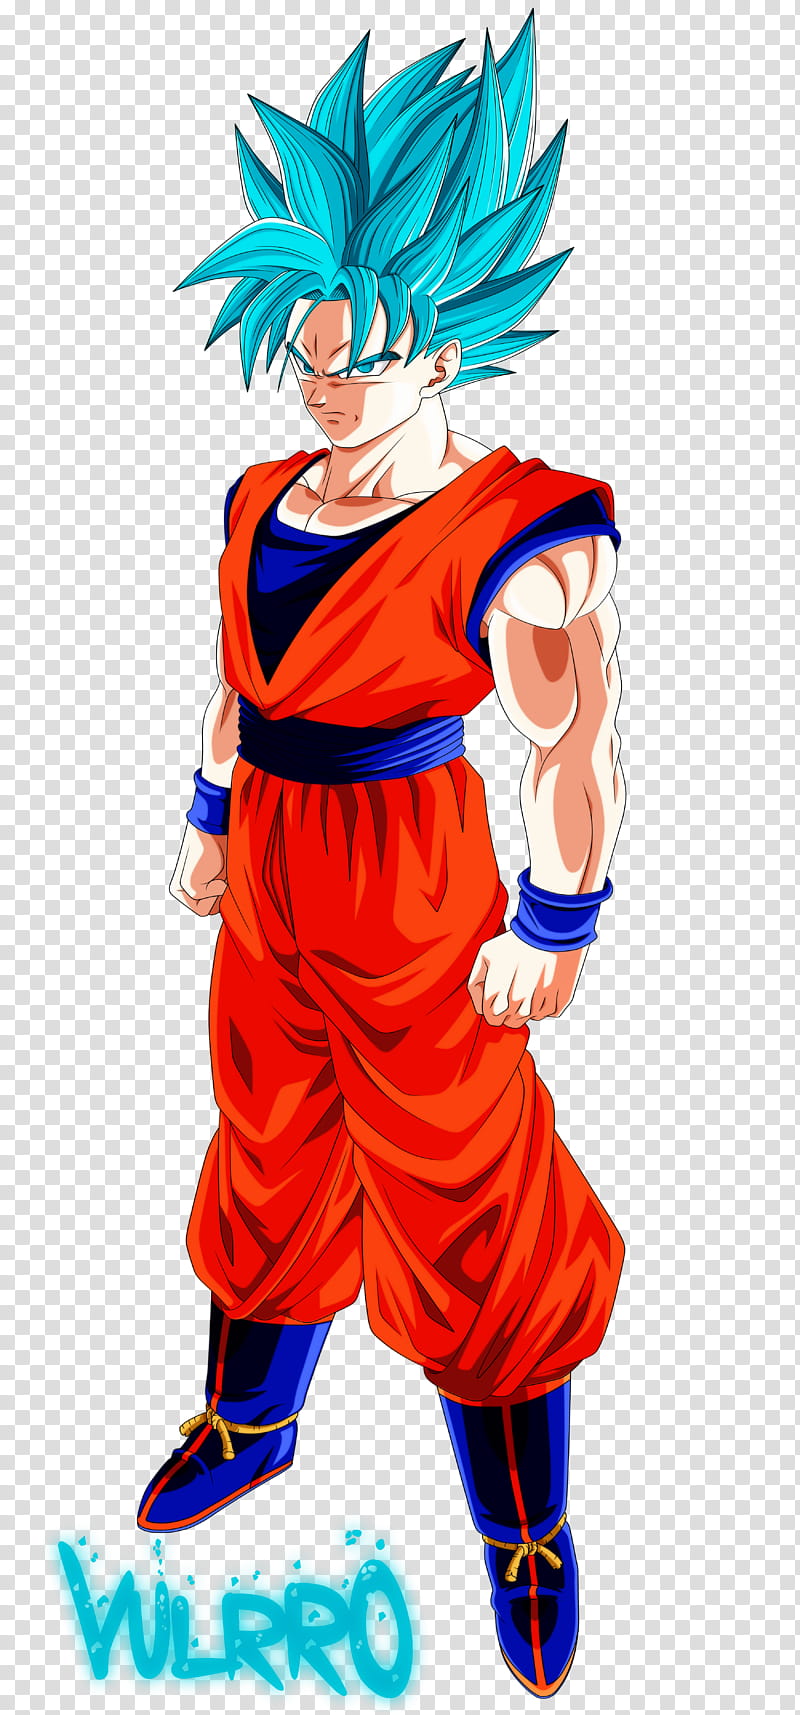 Goku Super Saiyan Blue V transparent background PNG clipart